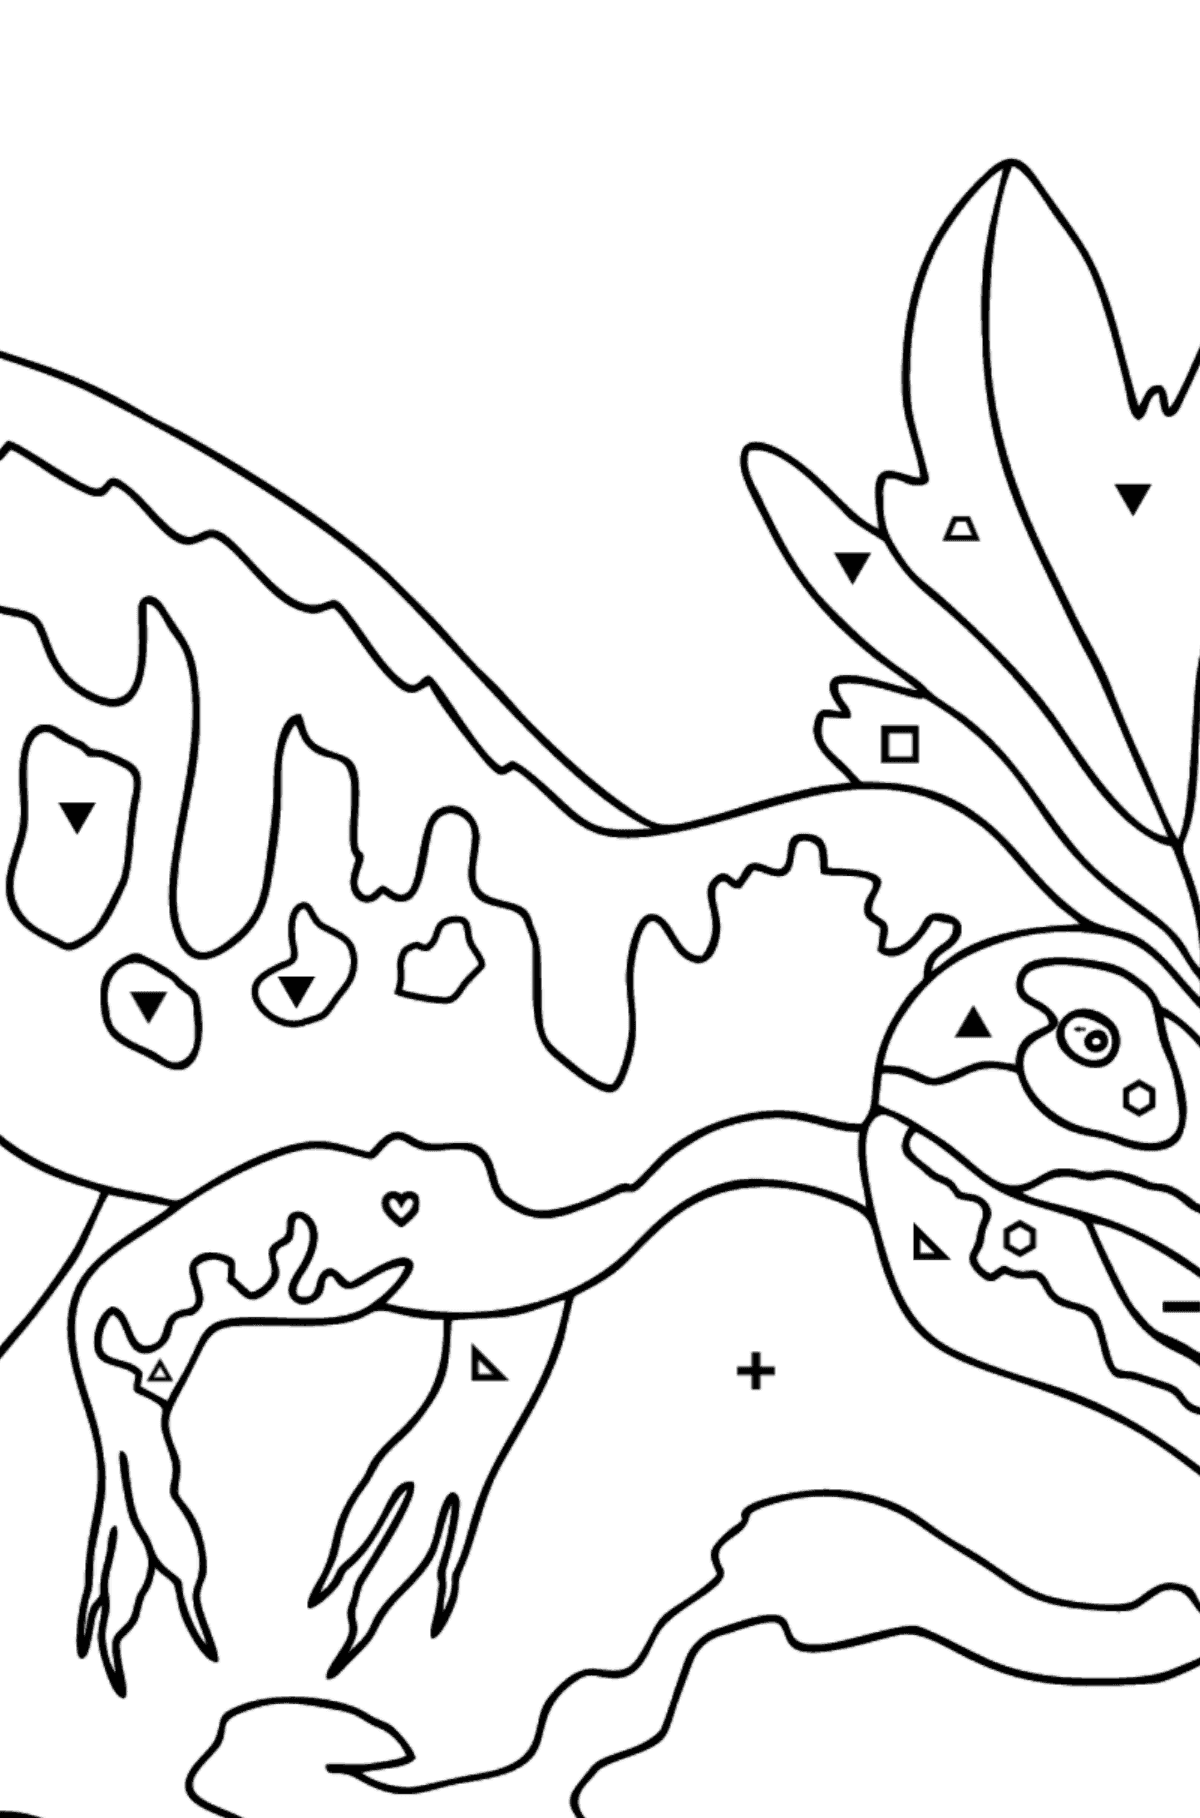 Tegning til fargelegging allosaurus (vanskelig) - Fargelegge etter symboler og geometriske former for barn